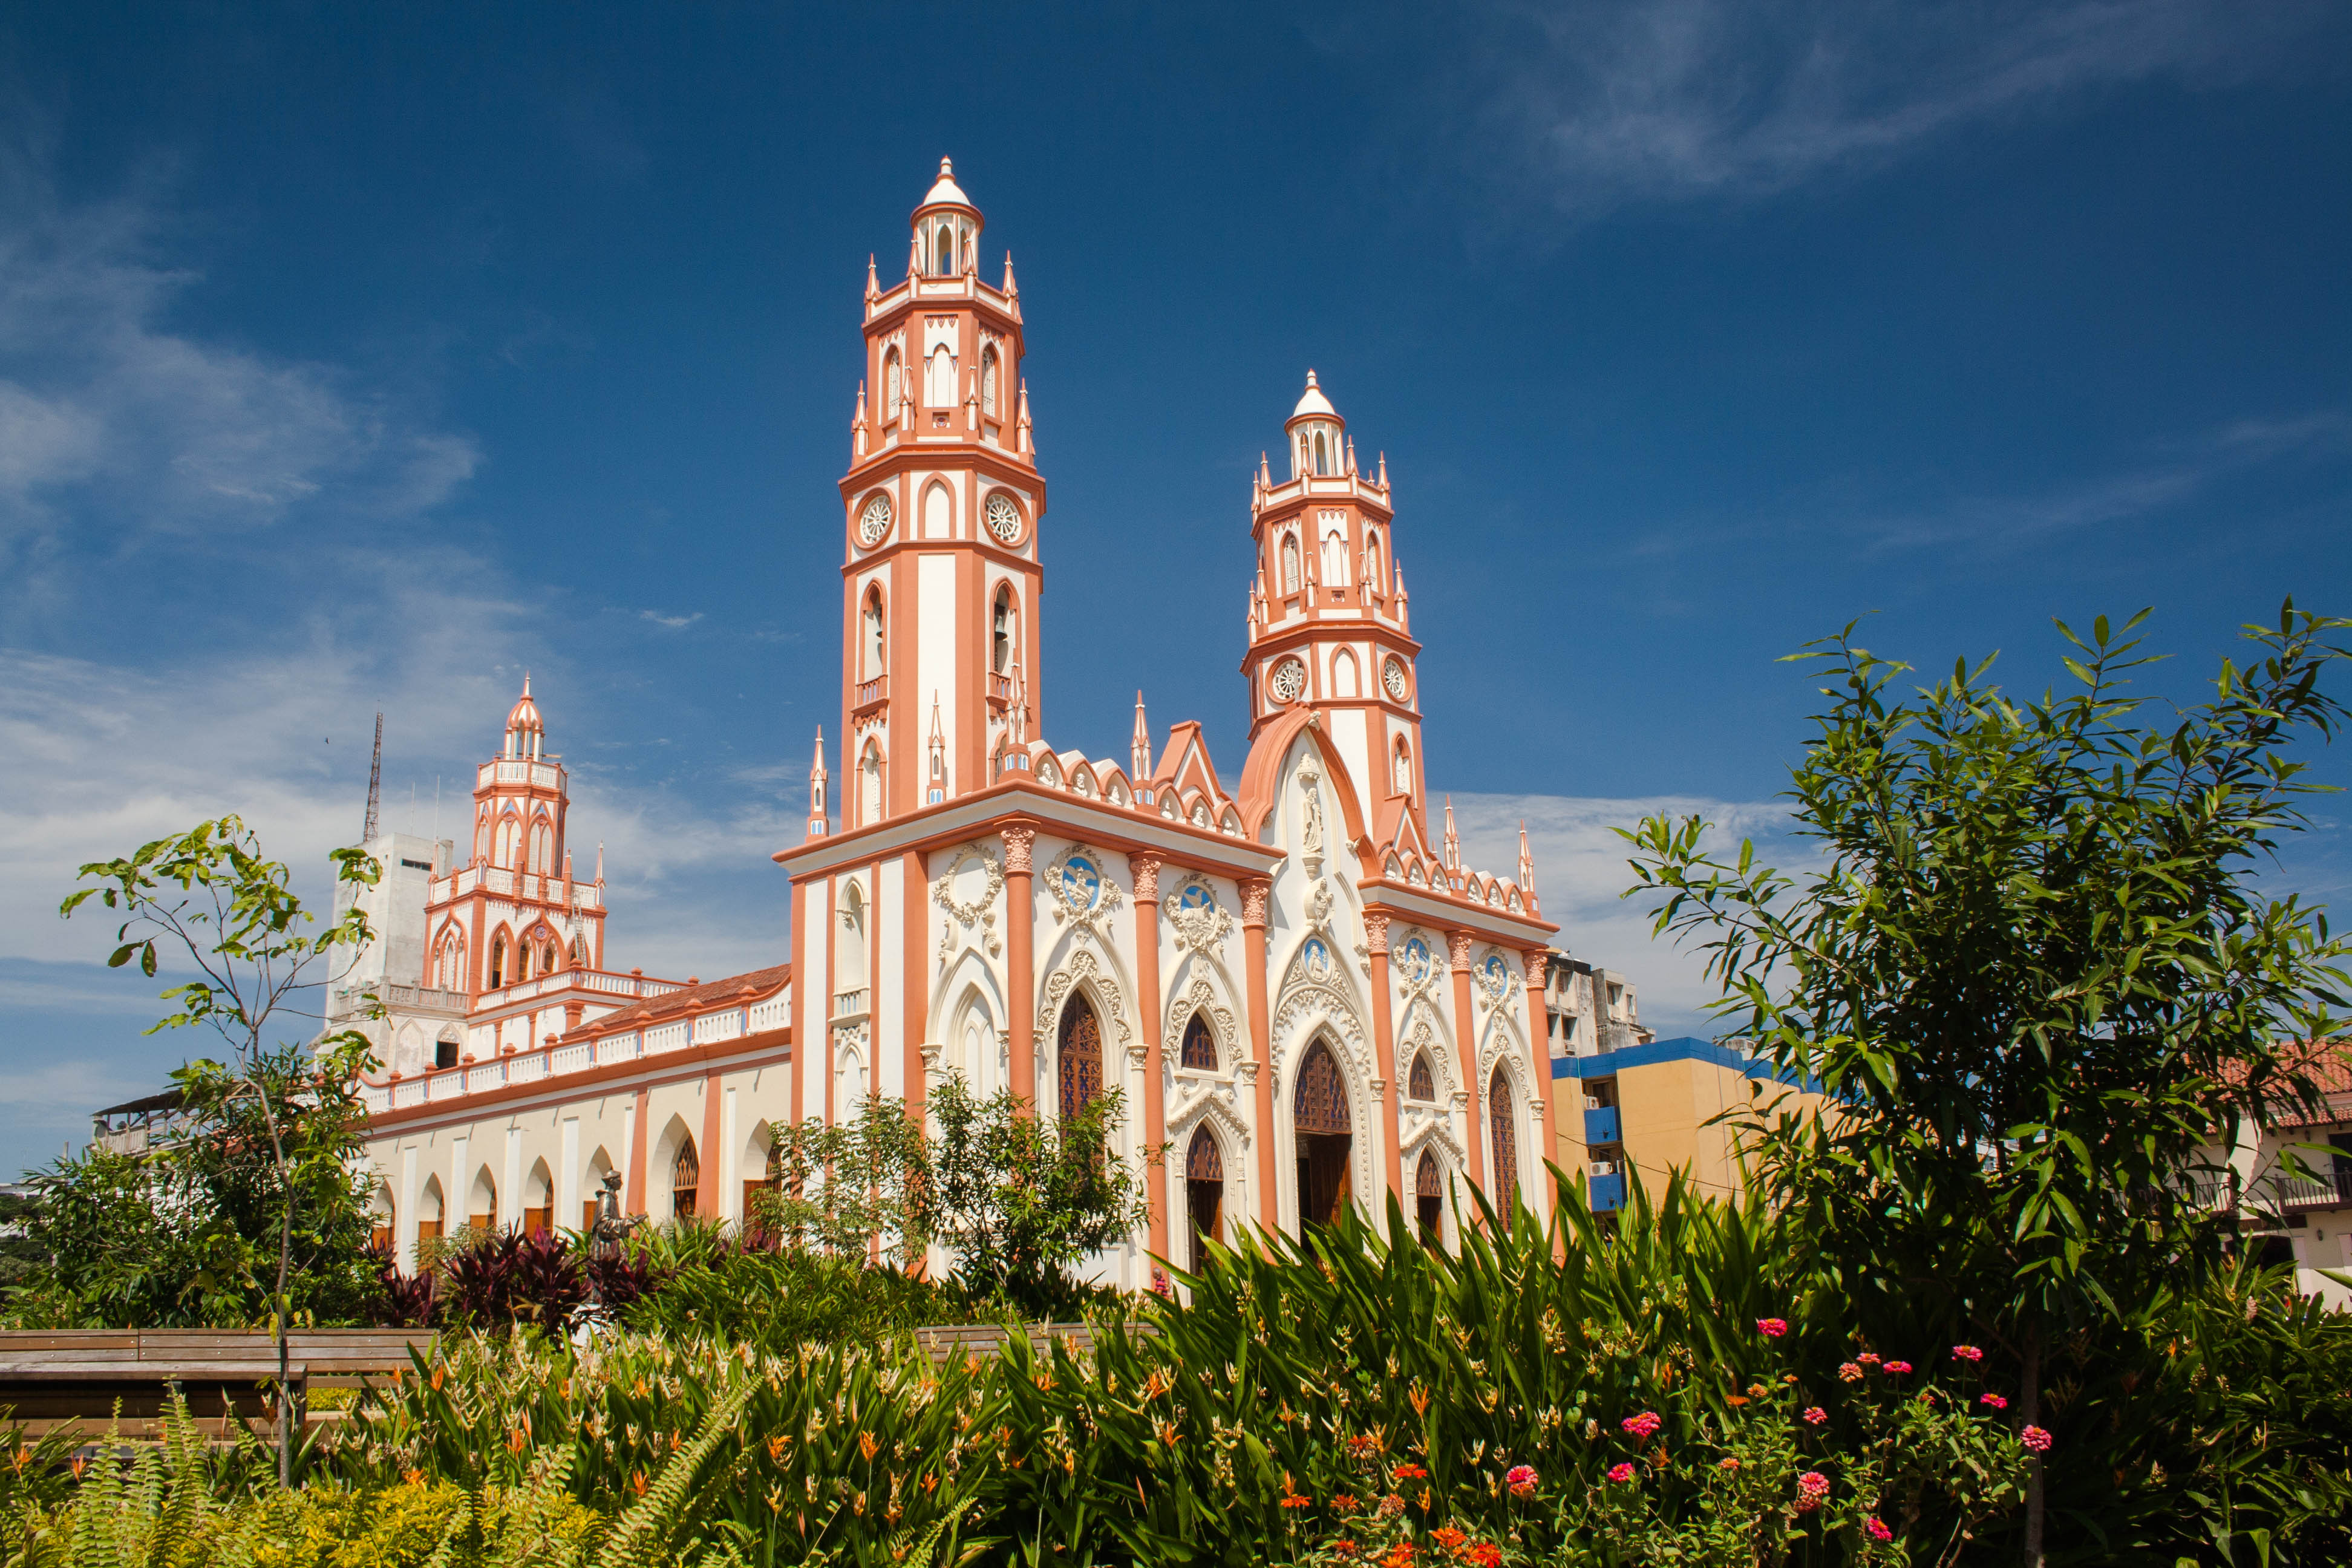 Catedrales de Colombia: las 10 iglesias más impactantes por su arquitectura